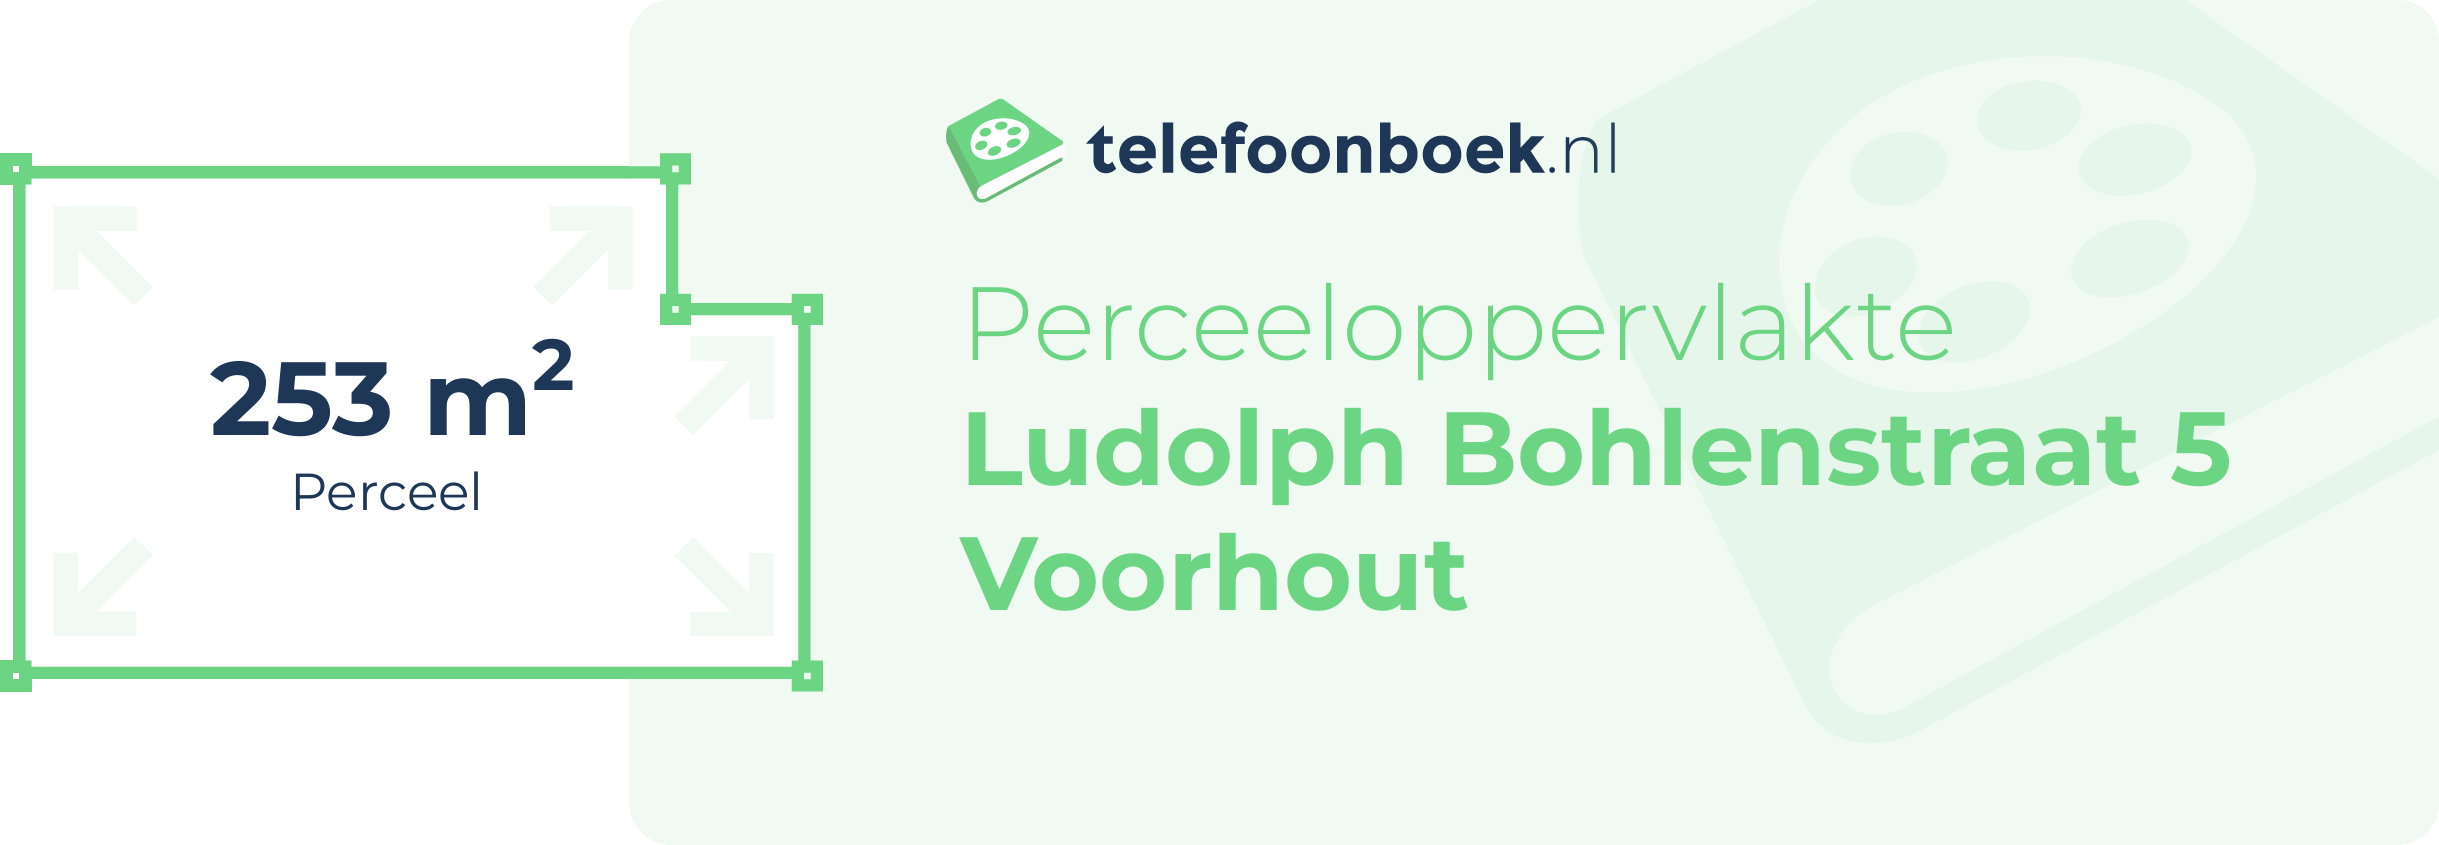 Perceeloppervlakte Ludolph Bohlenstraat 5 Voorhout